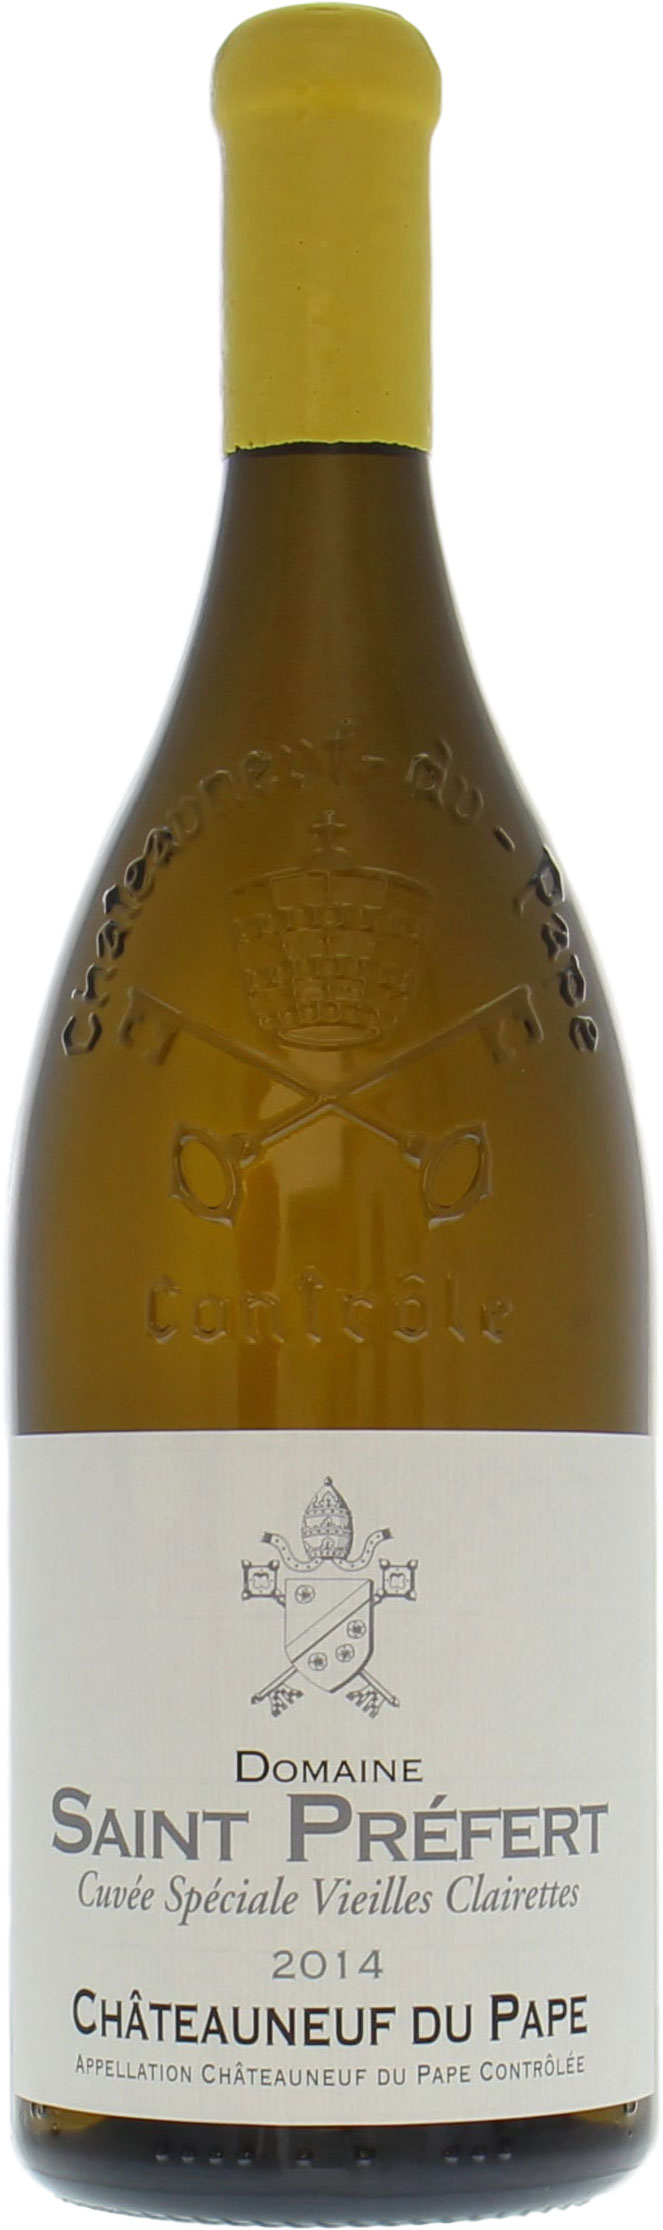 Domaine de Saint-Prefert - Chateauneuf du Pape Chateauneuf du Pape Vieilles Vignes de Clairette Blanc 2014